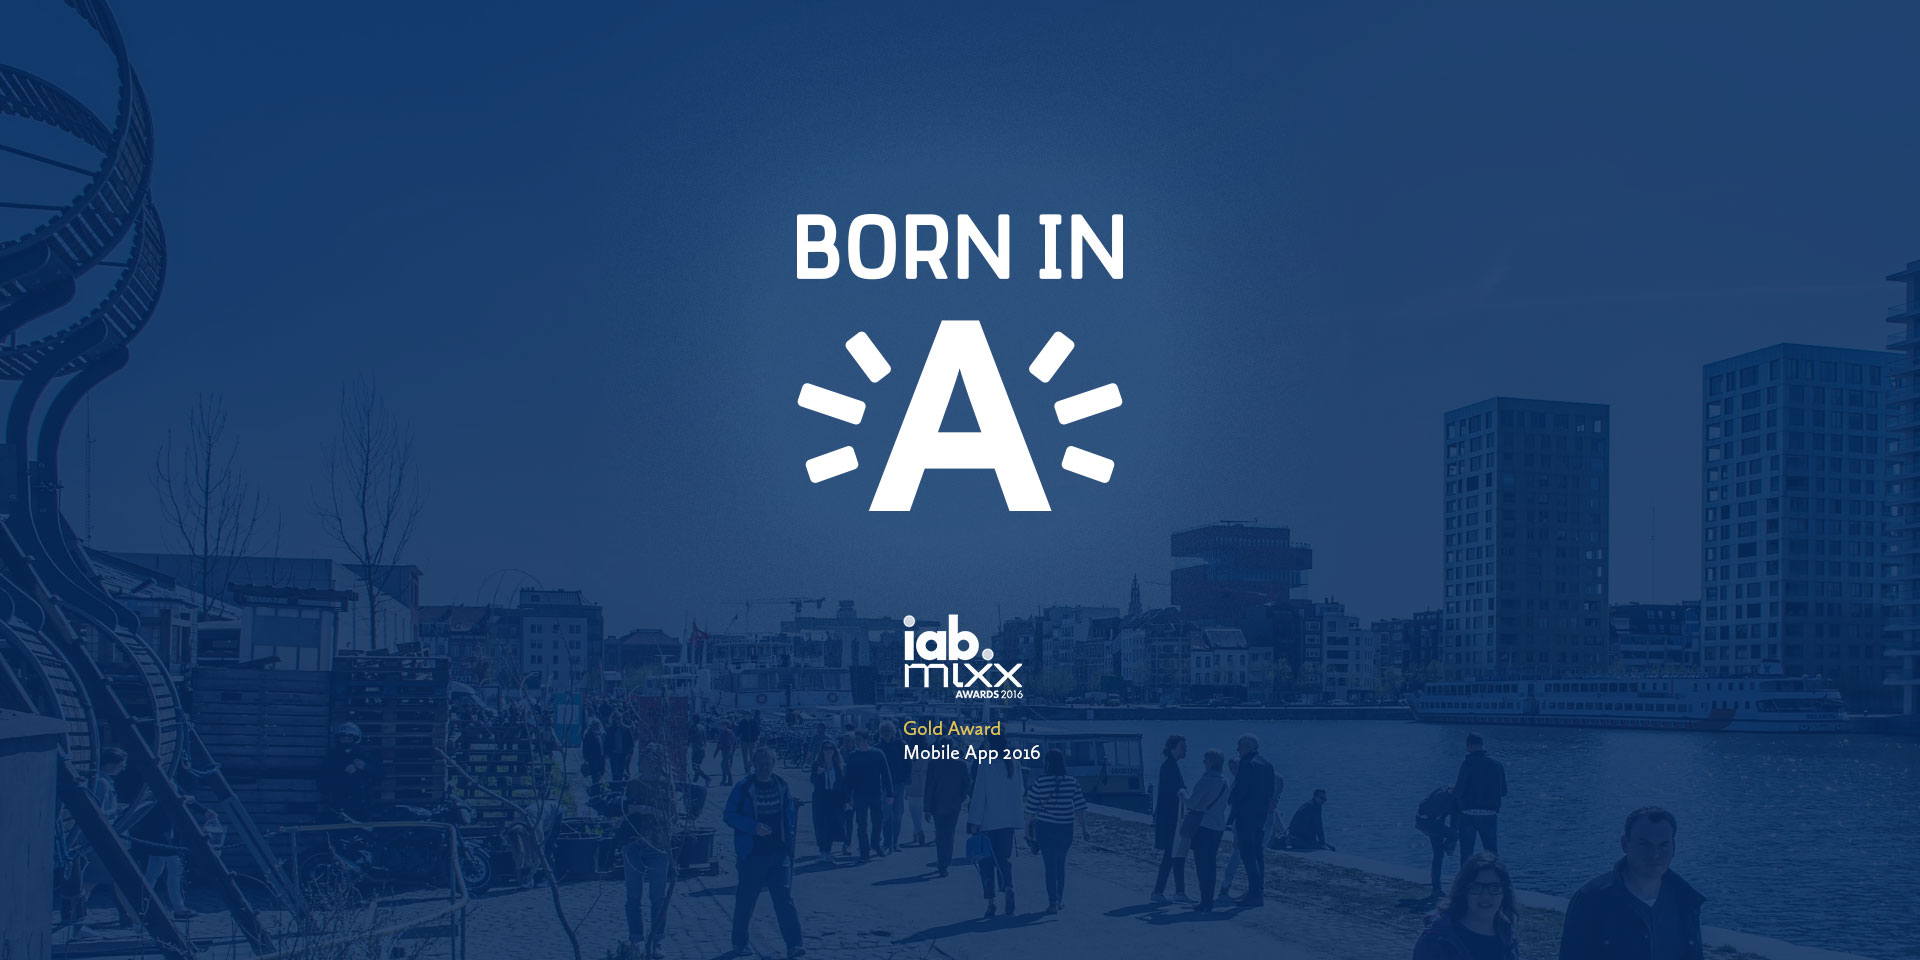 Born in Antwerp